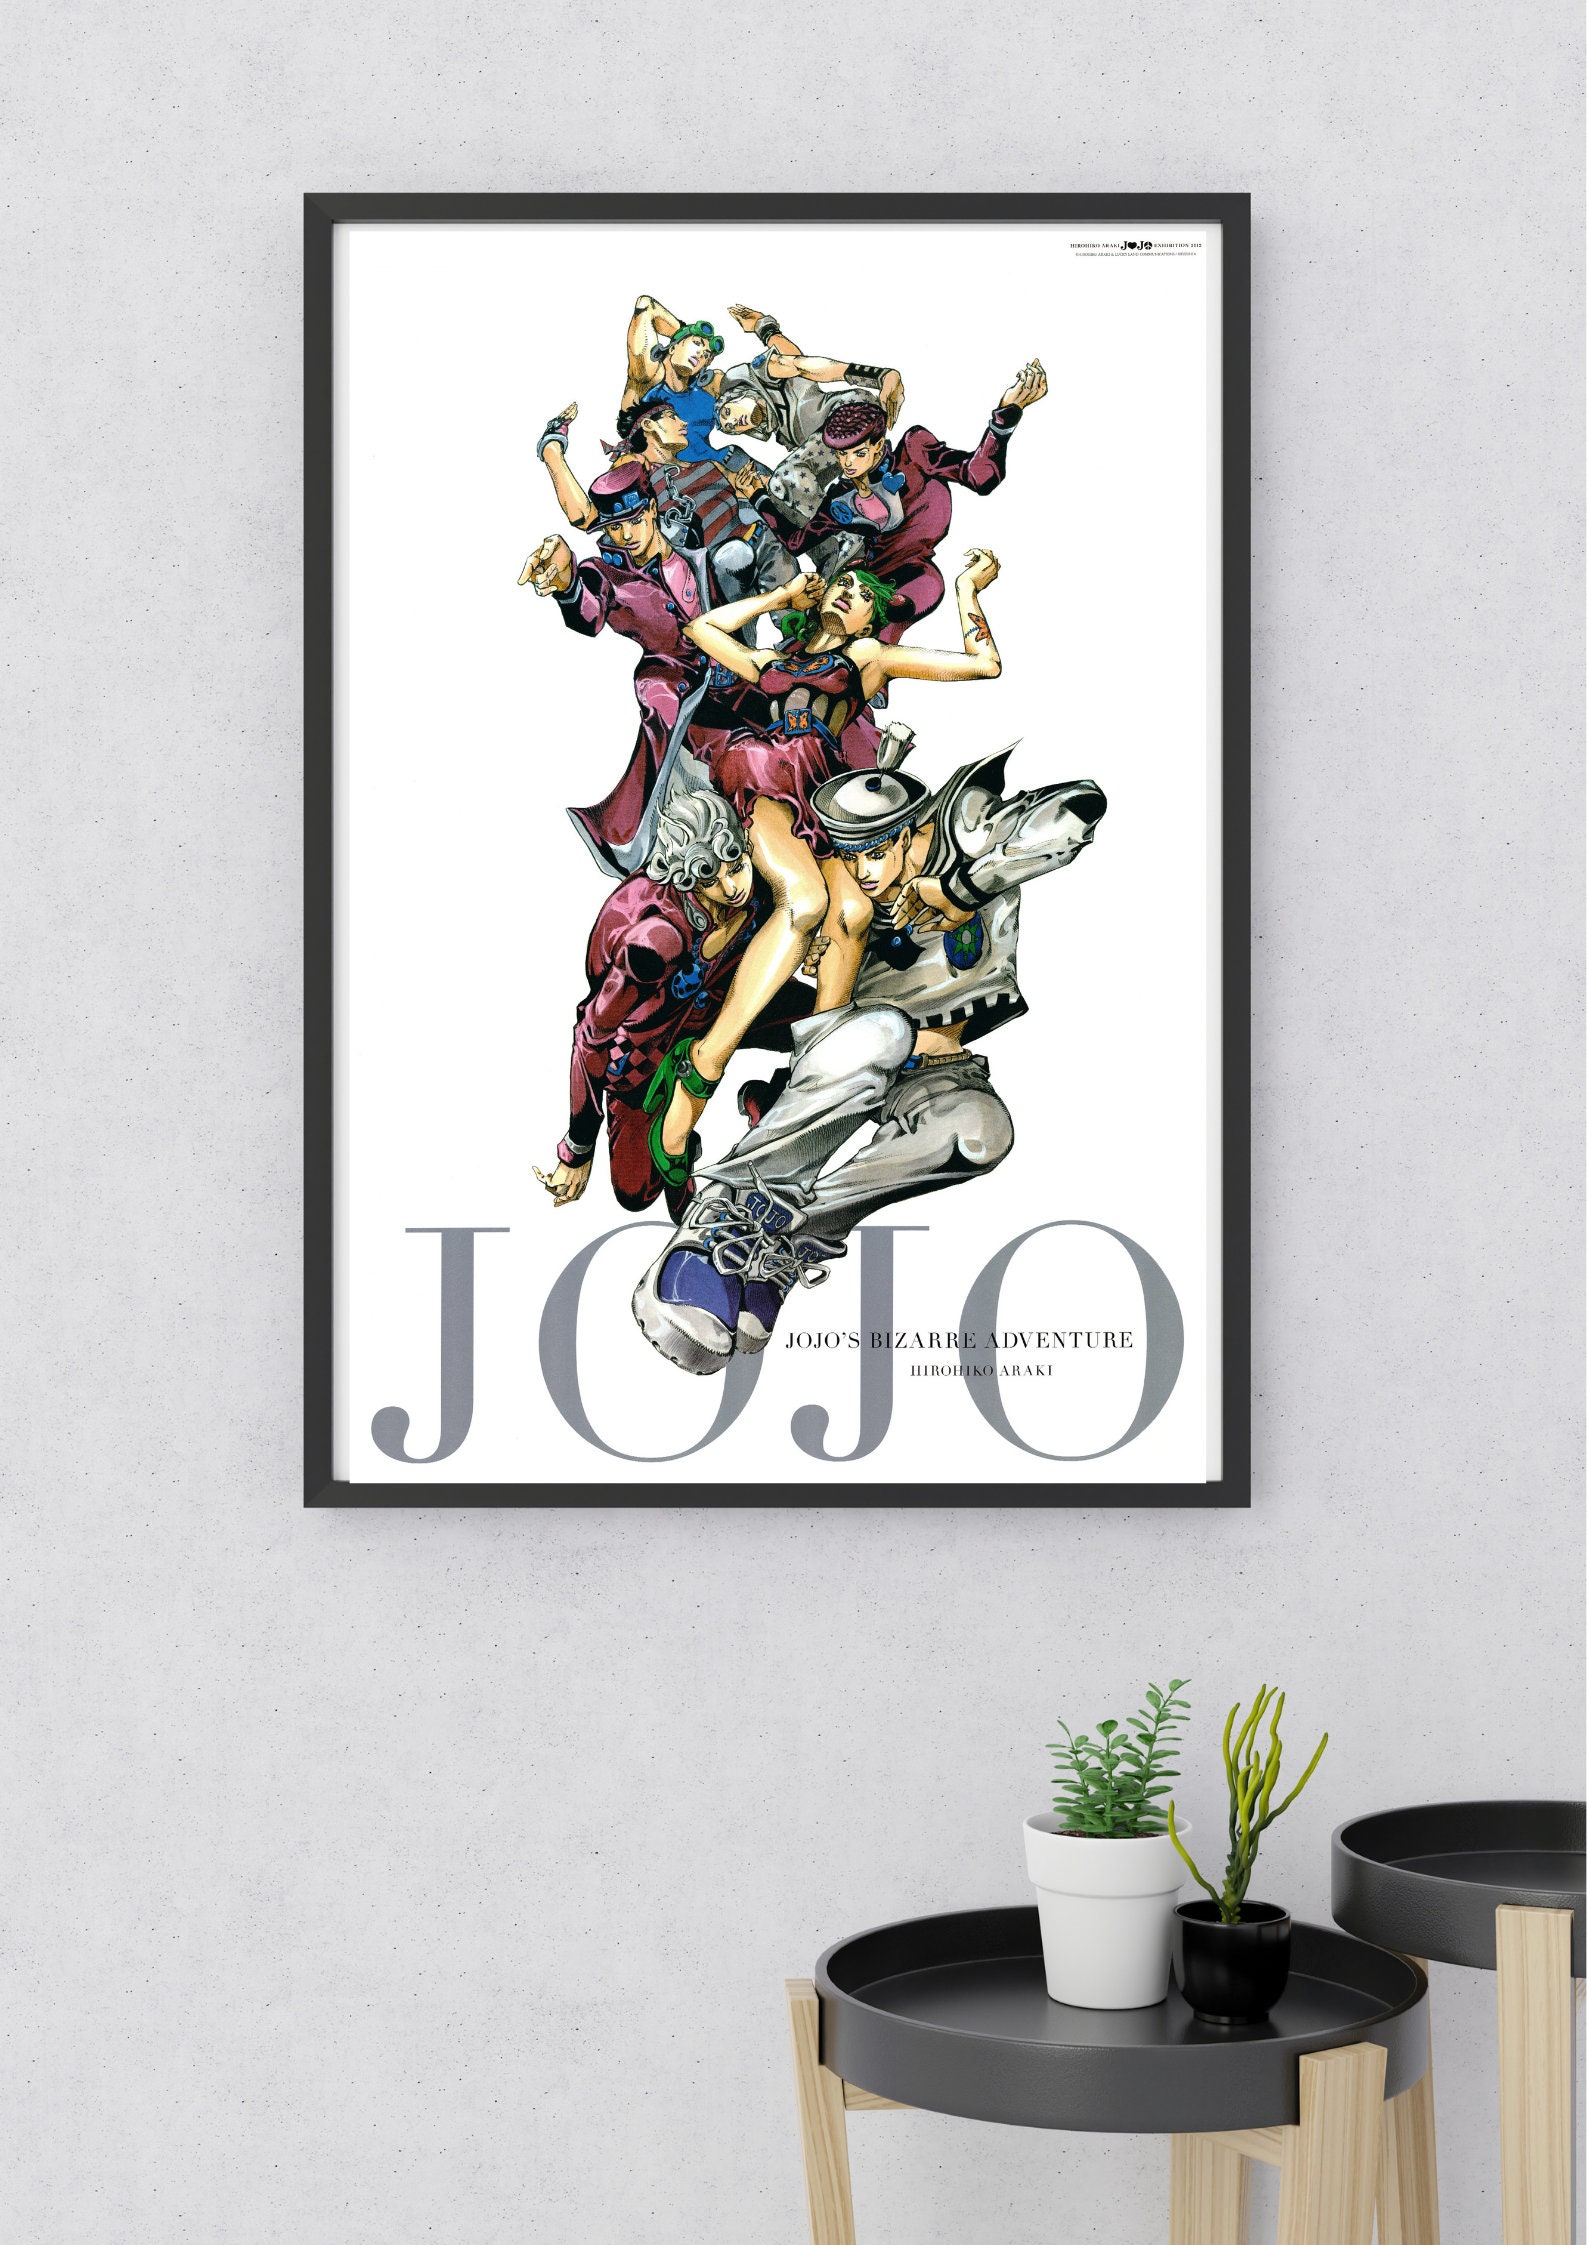 Jojo Pose Art Board Prints for Sale